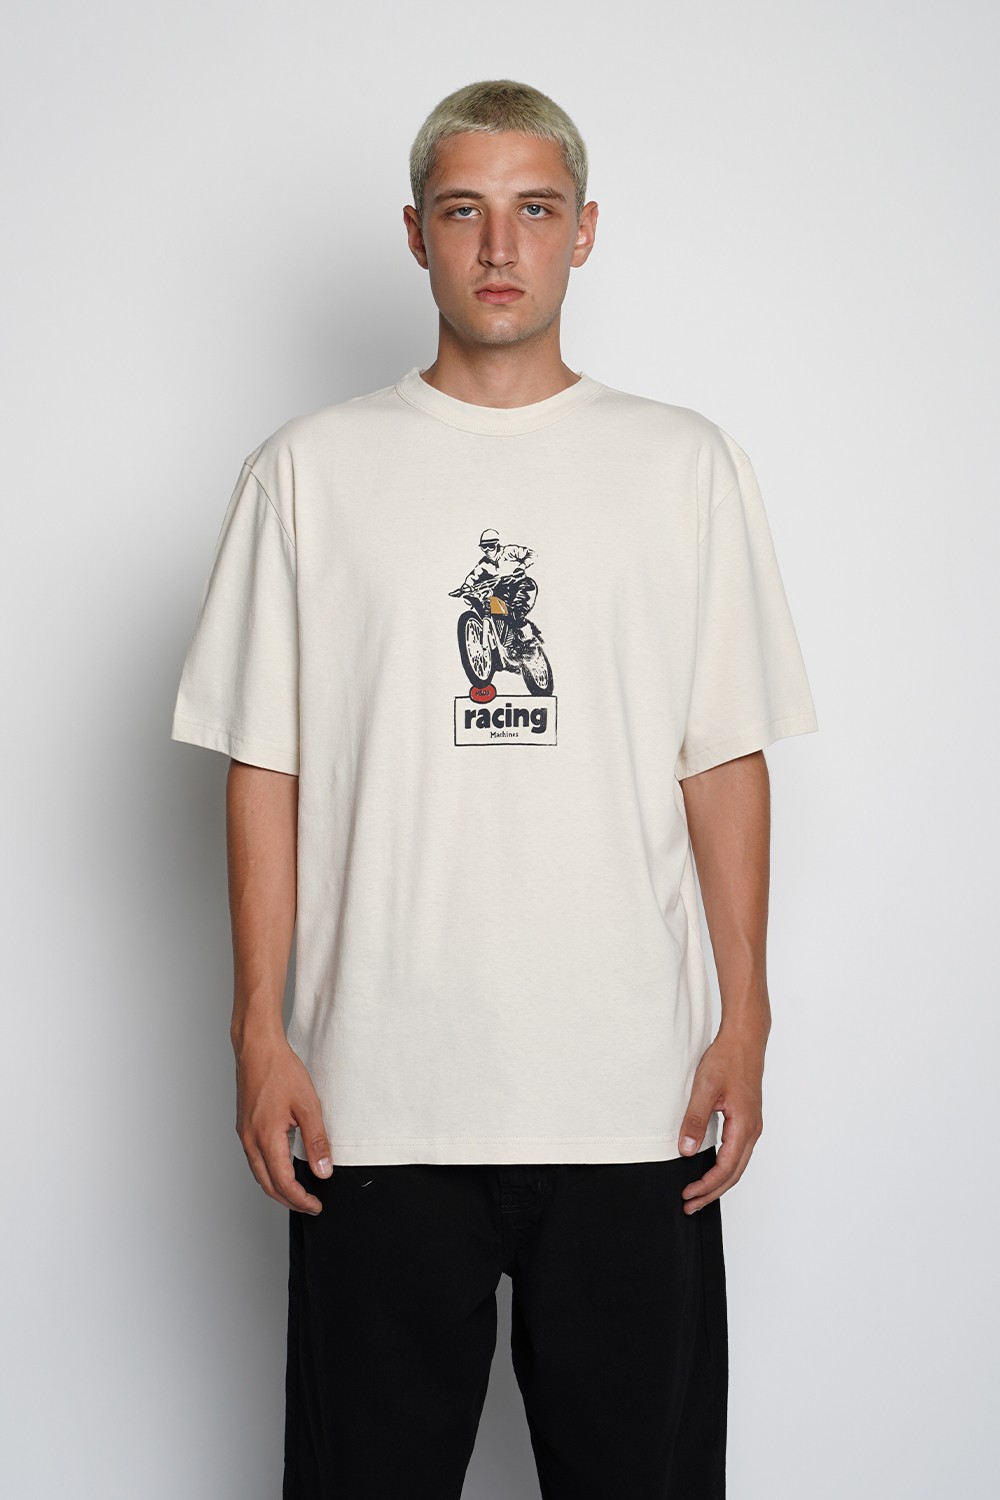 Racing Machines T-Shirt (PCO-6)